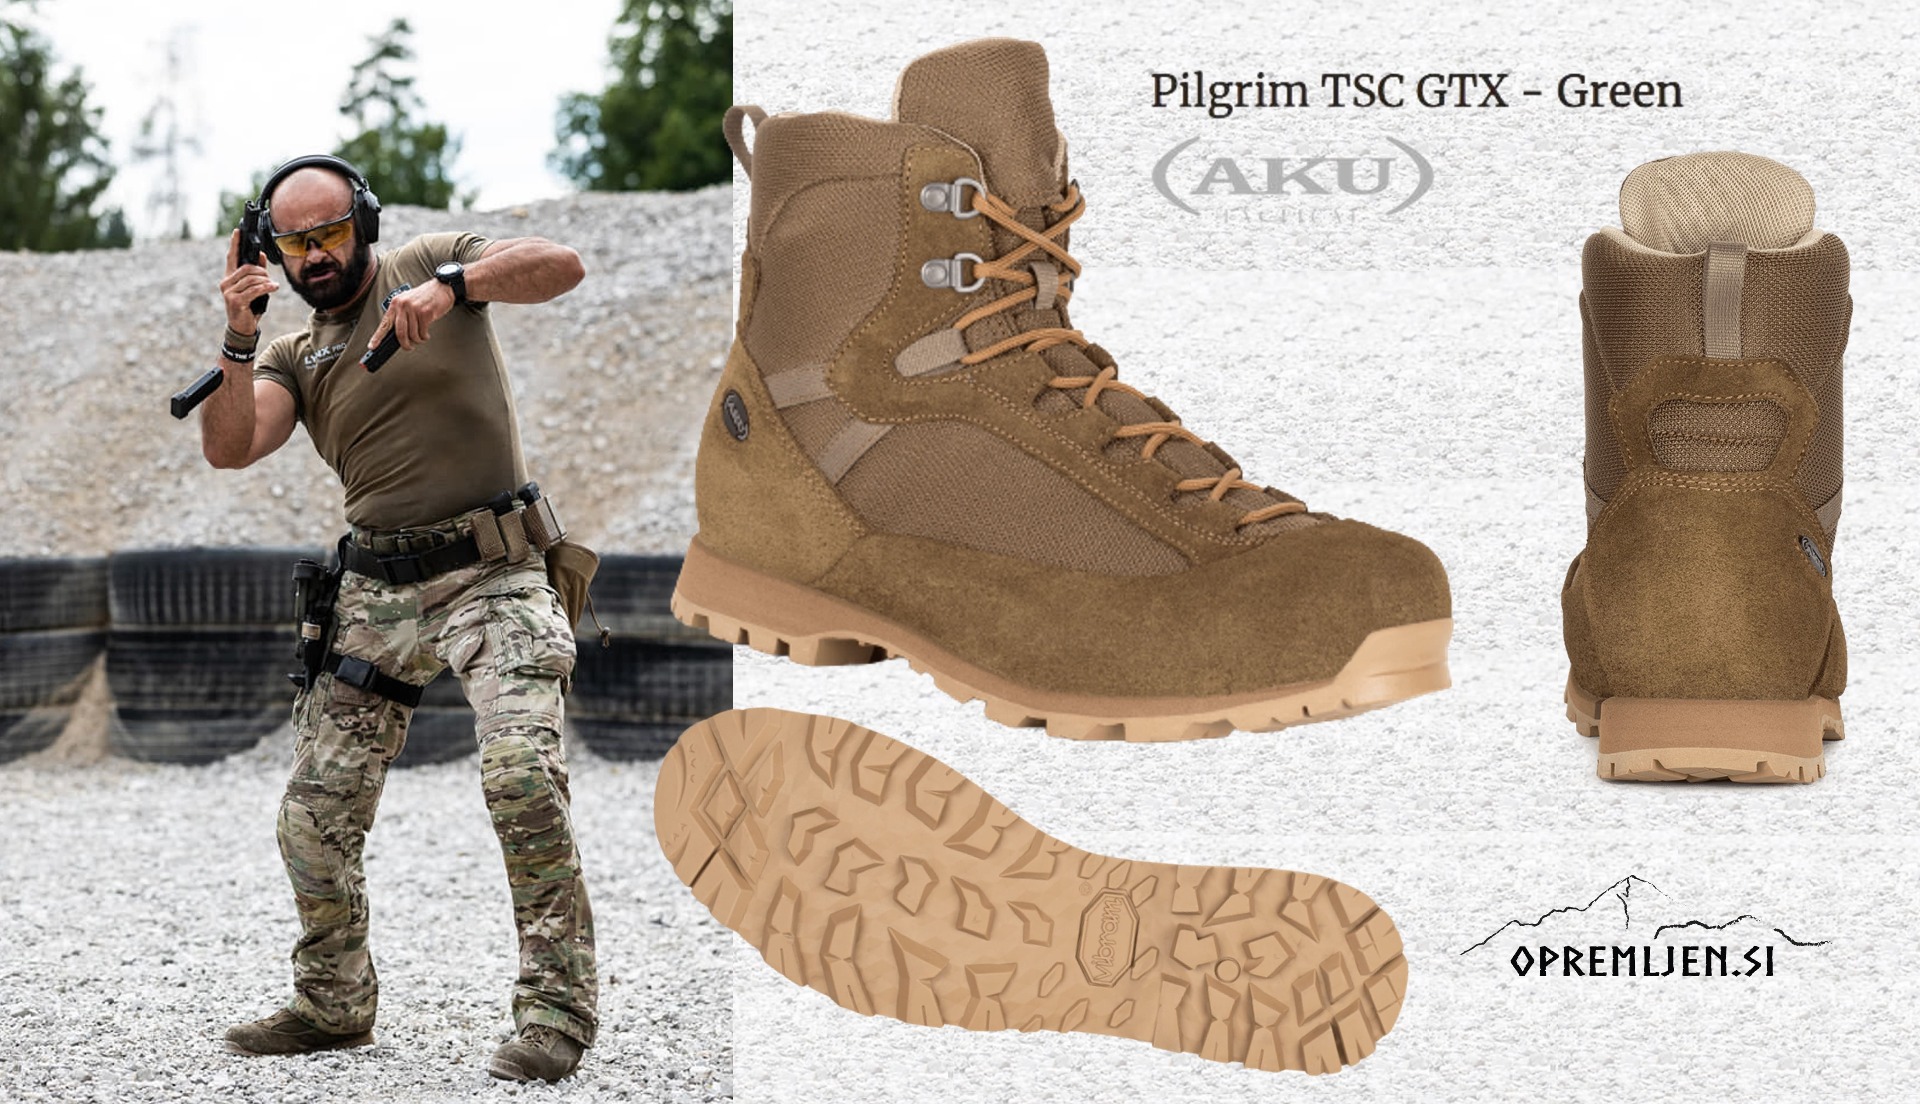 Kupite vrhunsko taktično obutev AKU Tactical Pilgrim TSC GTX Oliv po akcijski ceni. Primerna za zahtevne naloge in aktivnosti na prostem. Udobna, trpežna in varna obutev